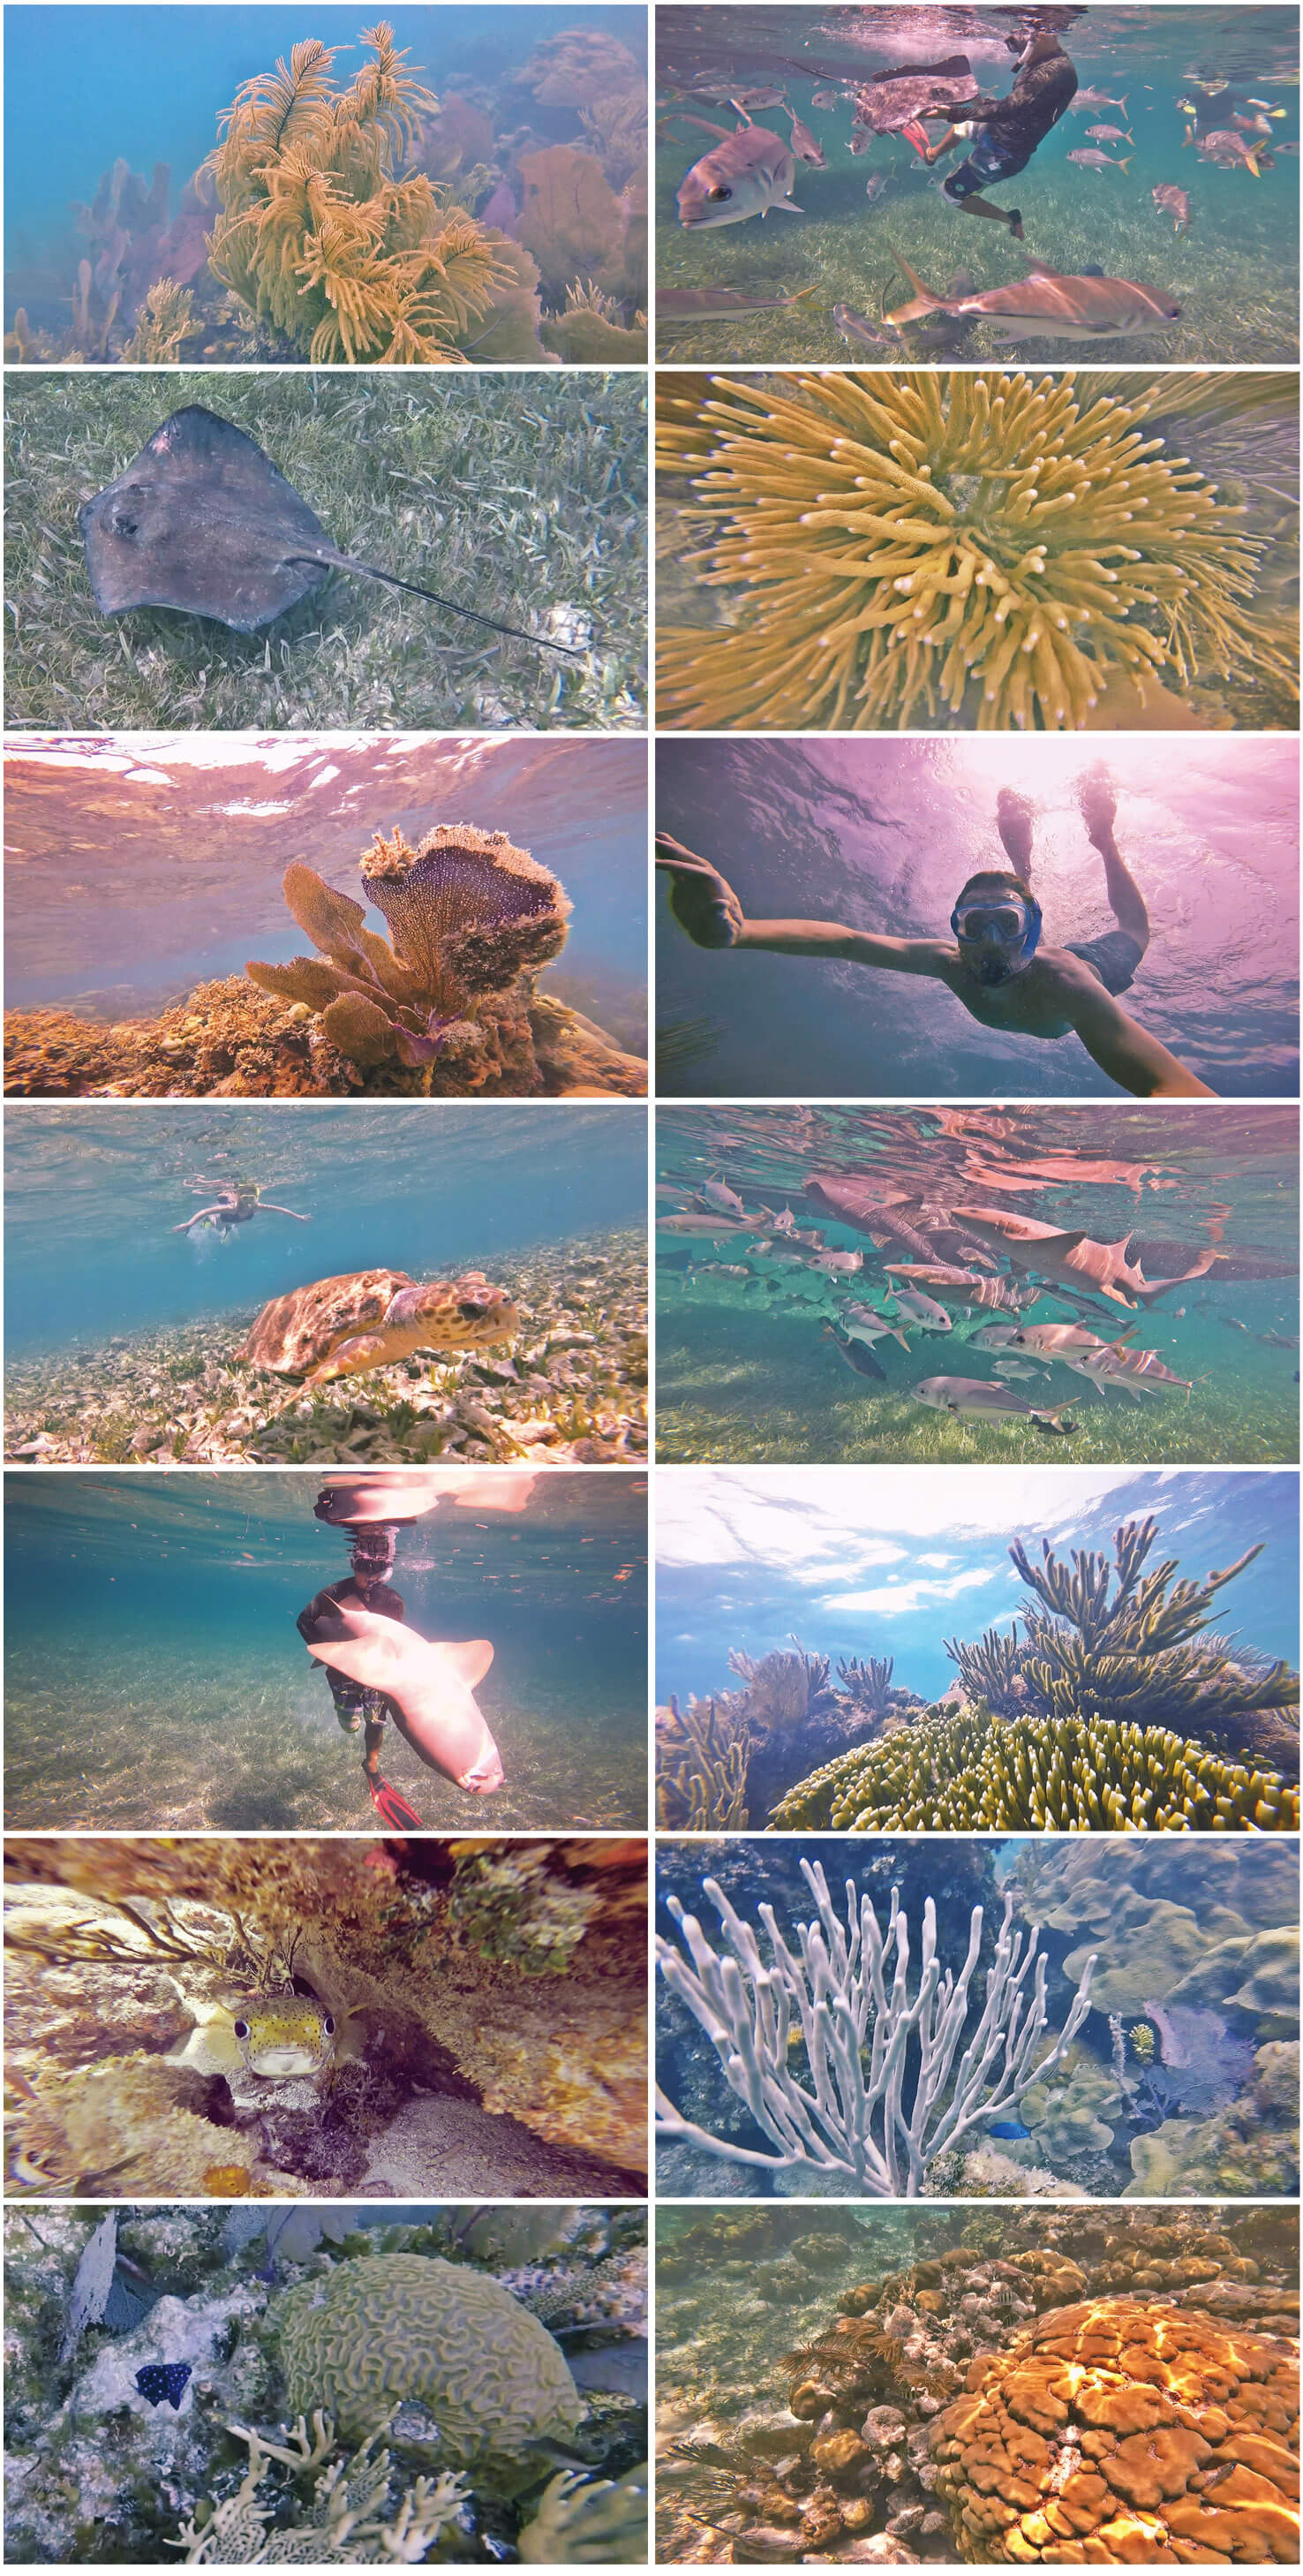 belize, coraux, snorkeling, hol chan, poissons, tortue, etoile de mer, requins, raies, corail, voyage